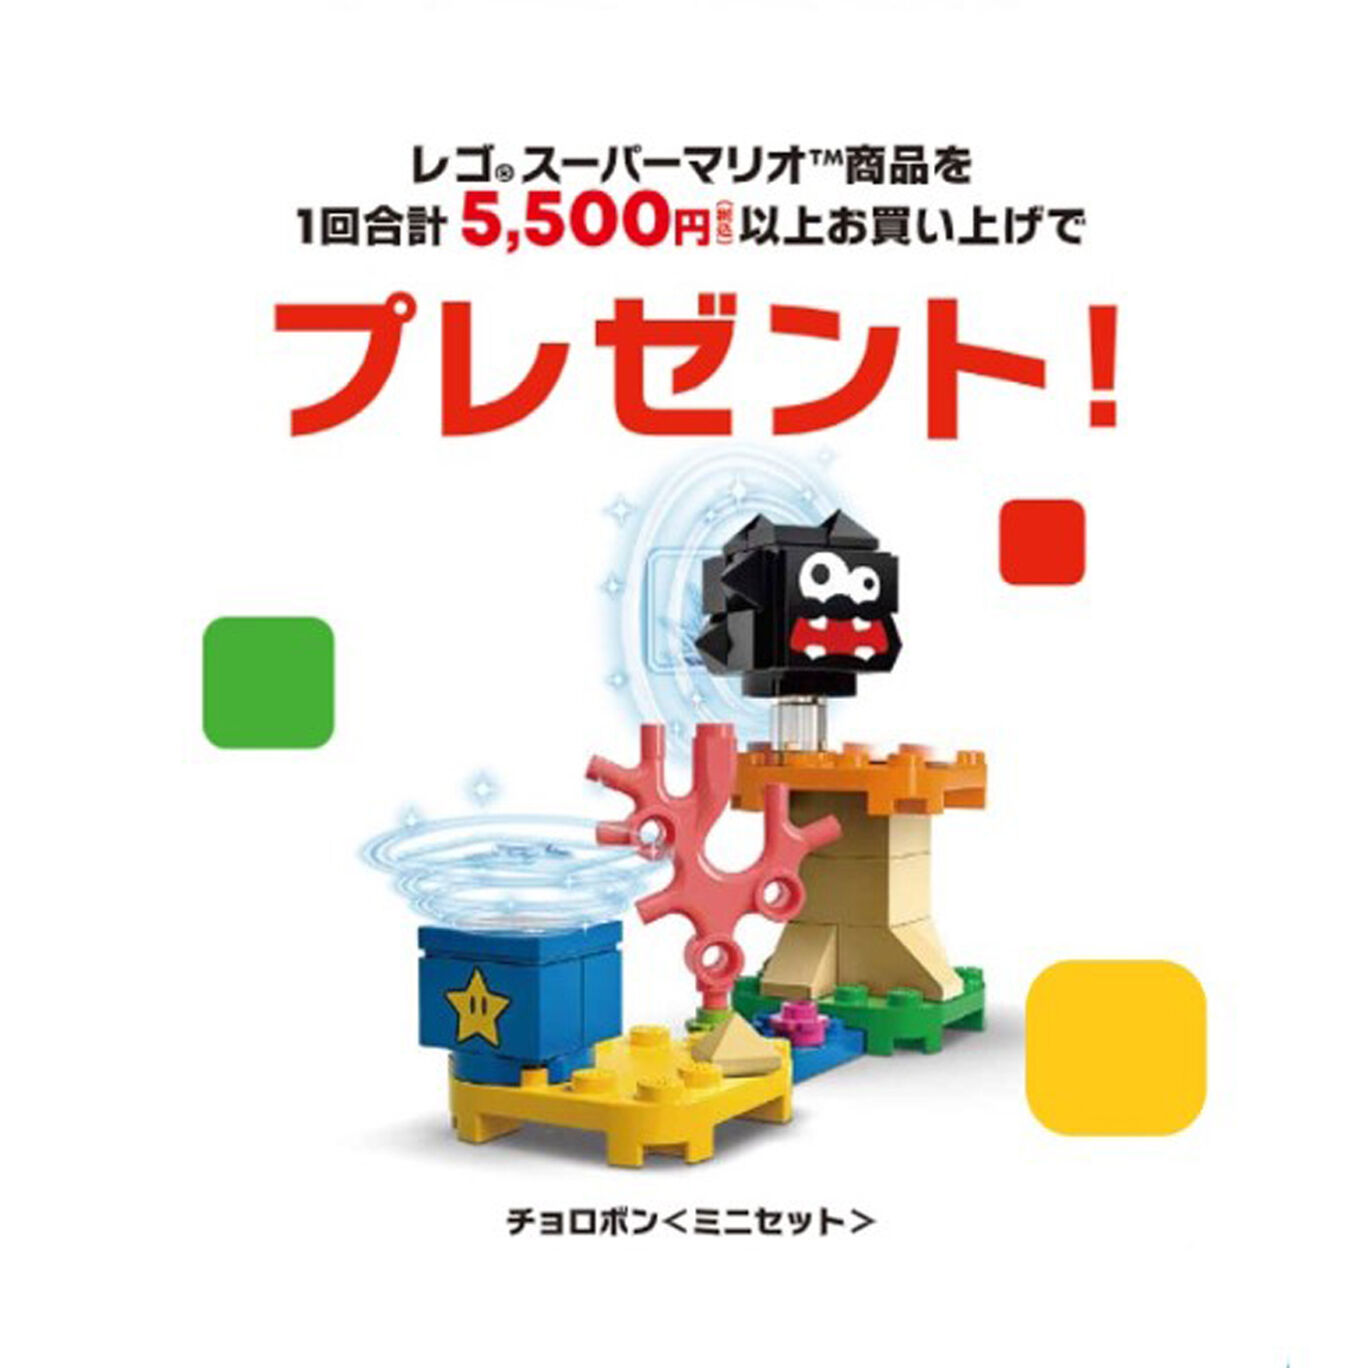 【新商品】レゴ®スーパーマリオ ネコピーチ パワーアップ と こおったとう チャレンジ